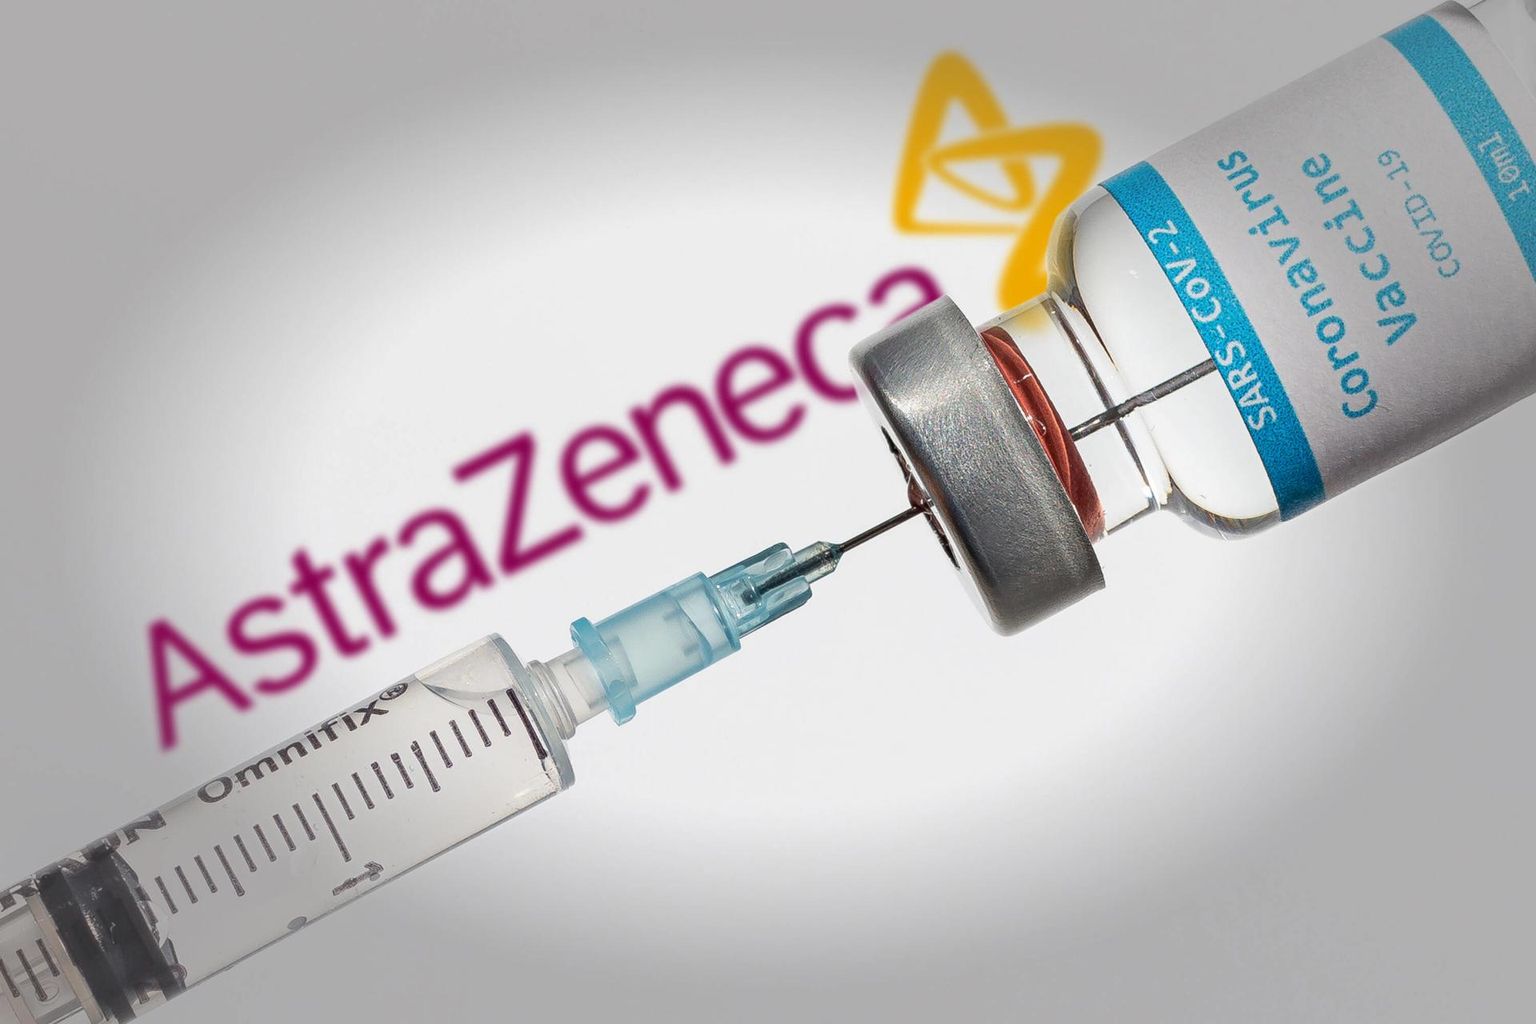 Eesti on sõlminud ravimihiiu AstraZenecaga koroonavaktsiini eelostulepingu, mis peaks nõuetekohase vaktsiini valmimisel tagama Eestile 1 330 000 doosi 665 000 inimese vaktsineerimiseks.